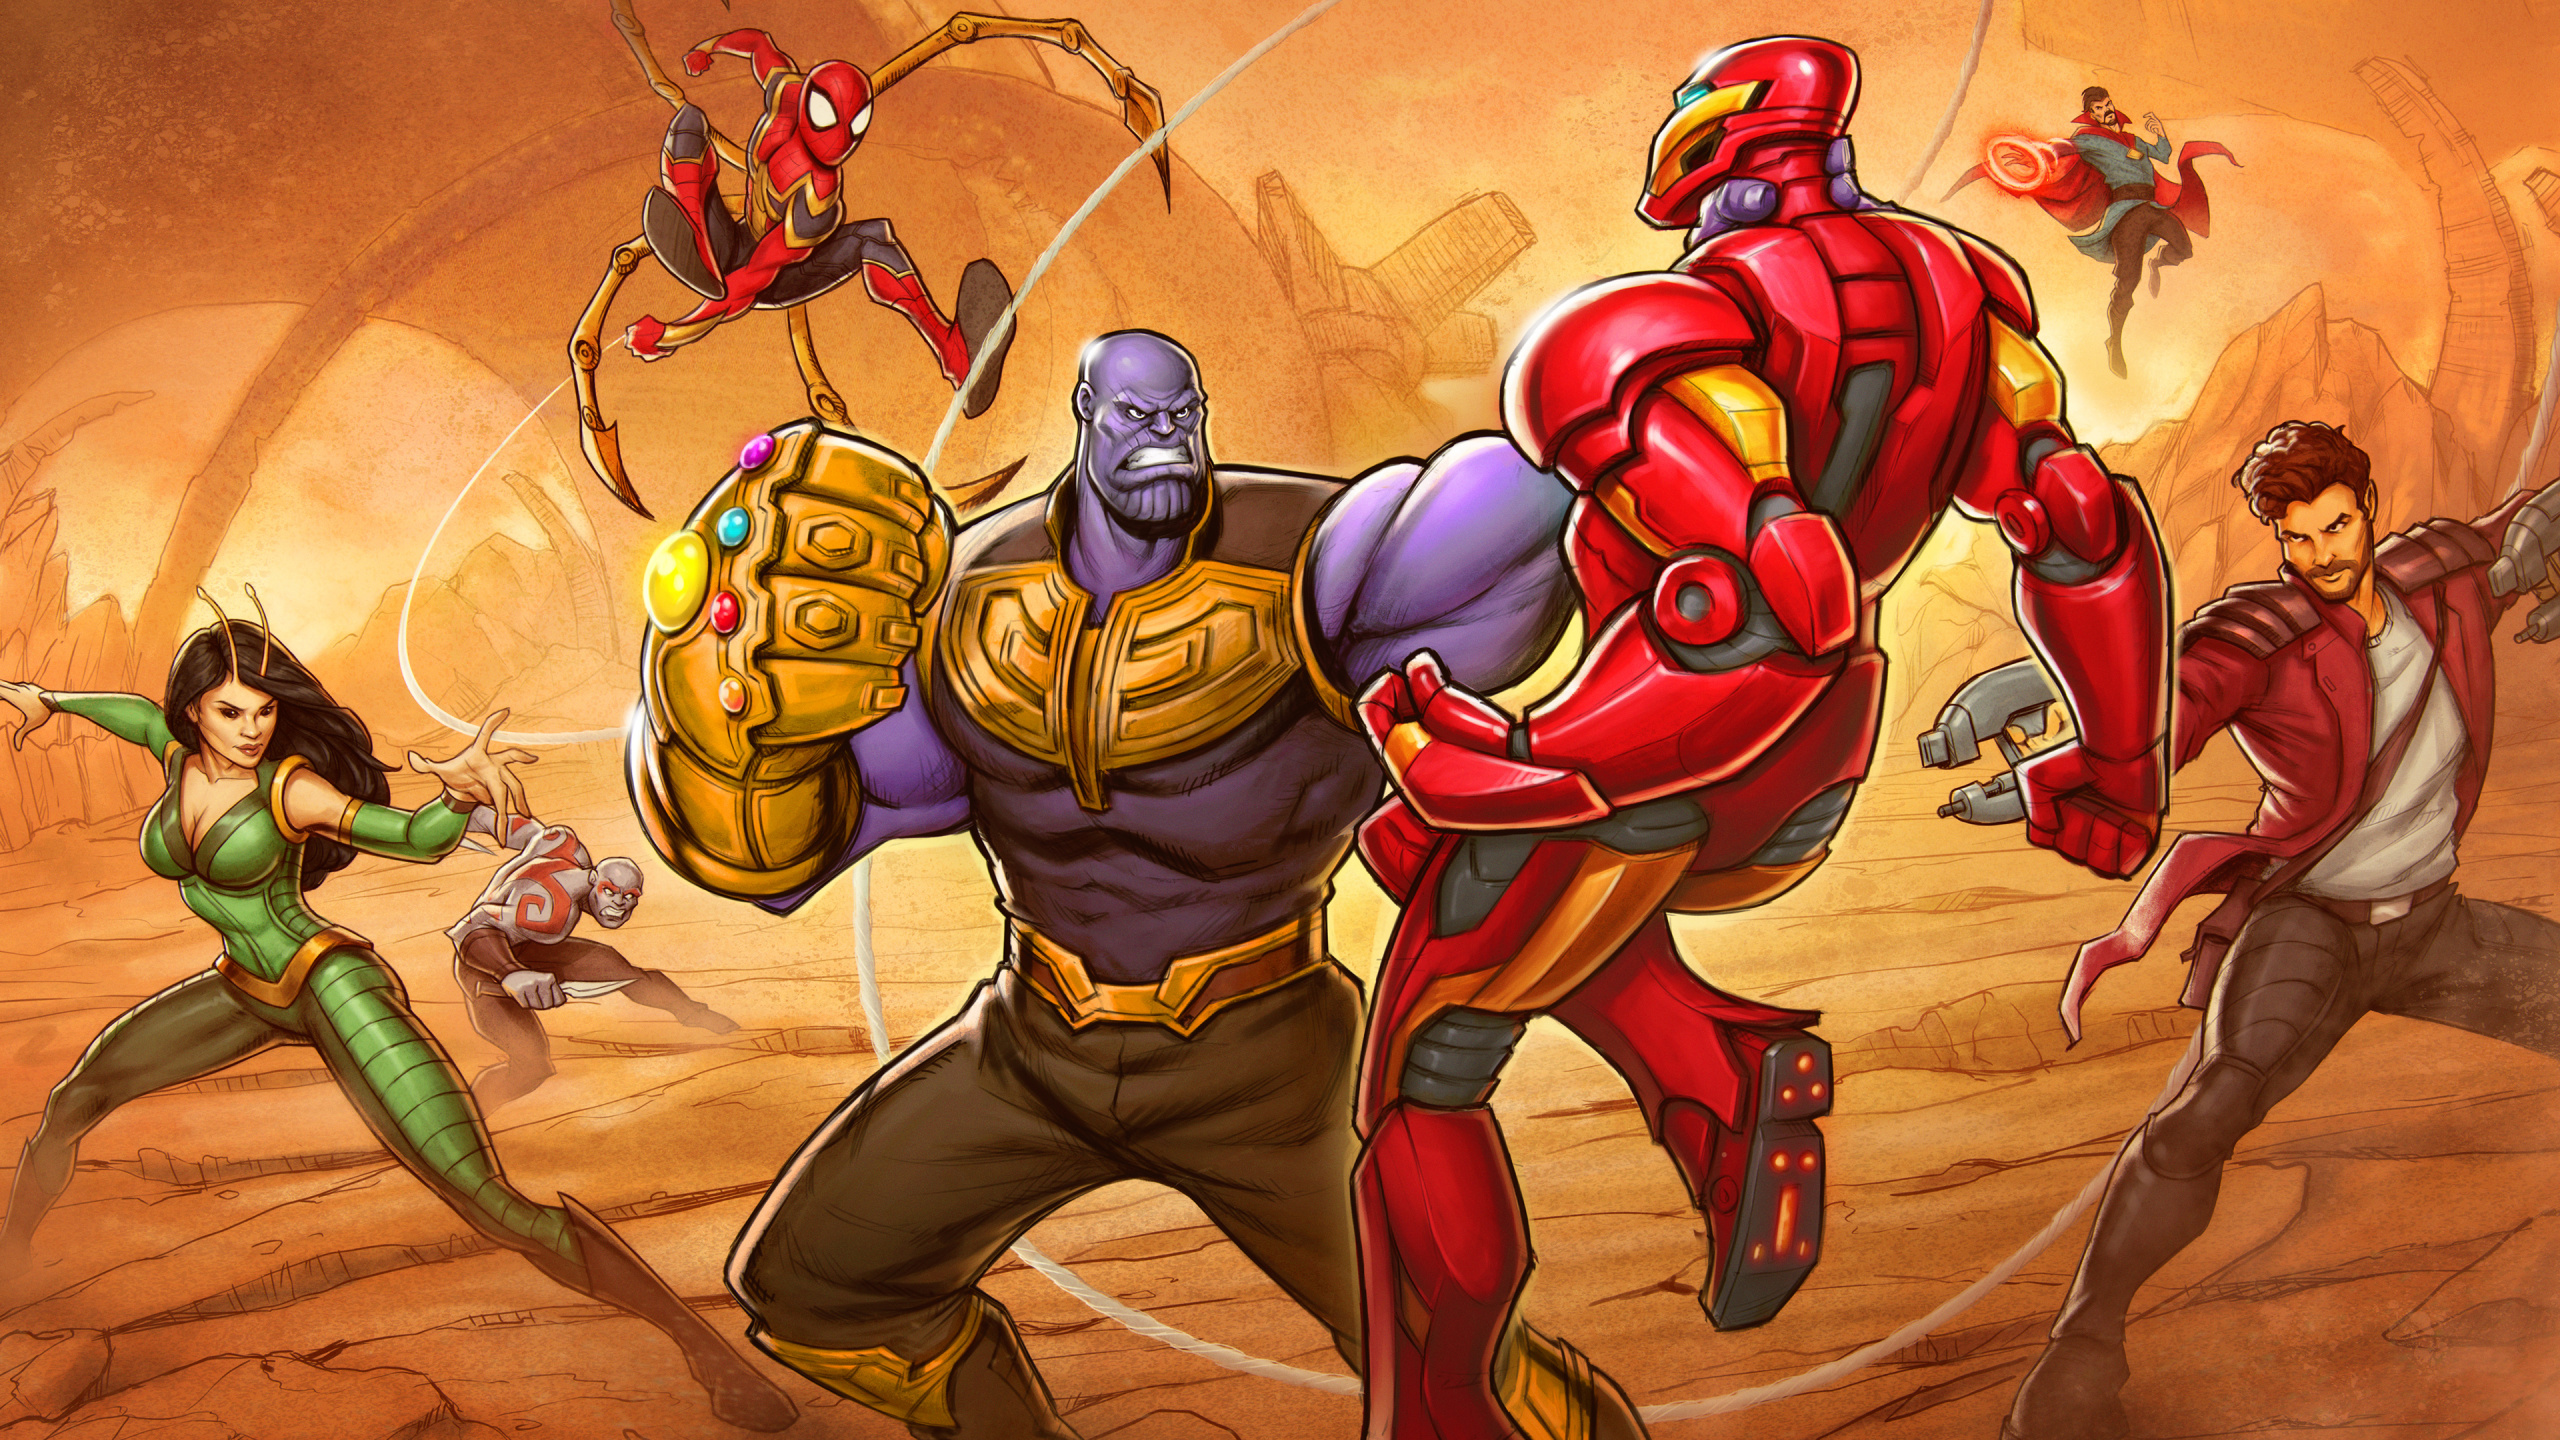 复仇者无穷的战争, Thanos, Spider-man, 超级英雄, 英雄 壁纸 2560x1440 允许